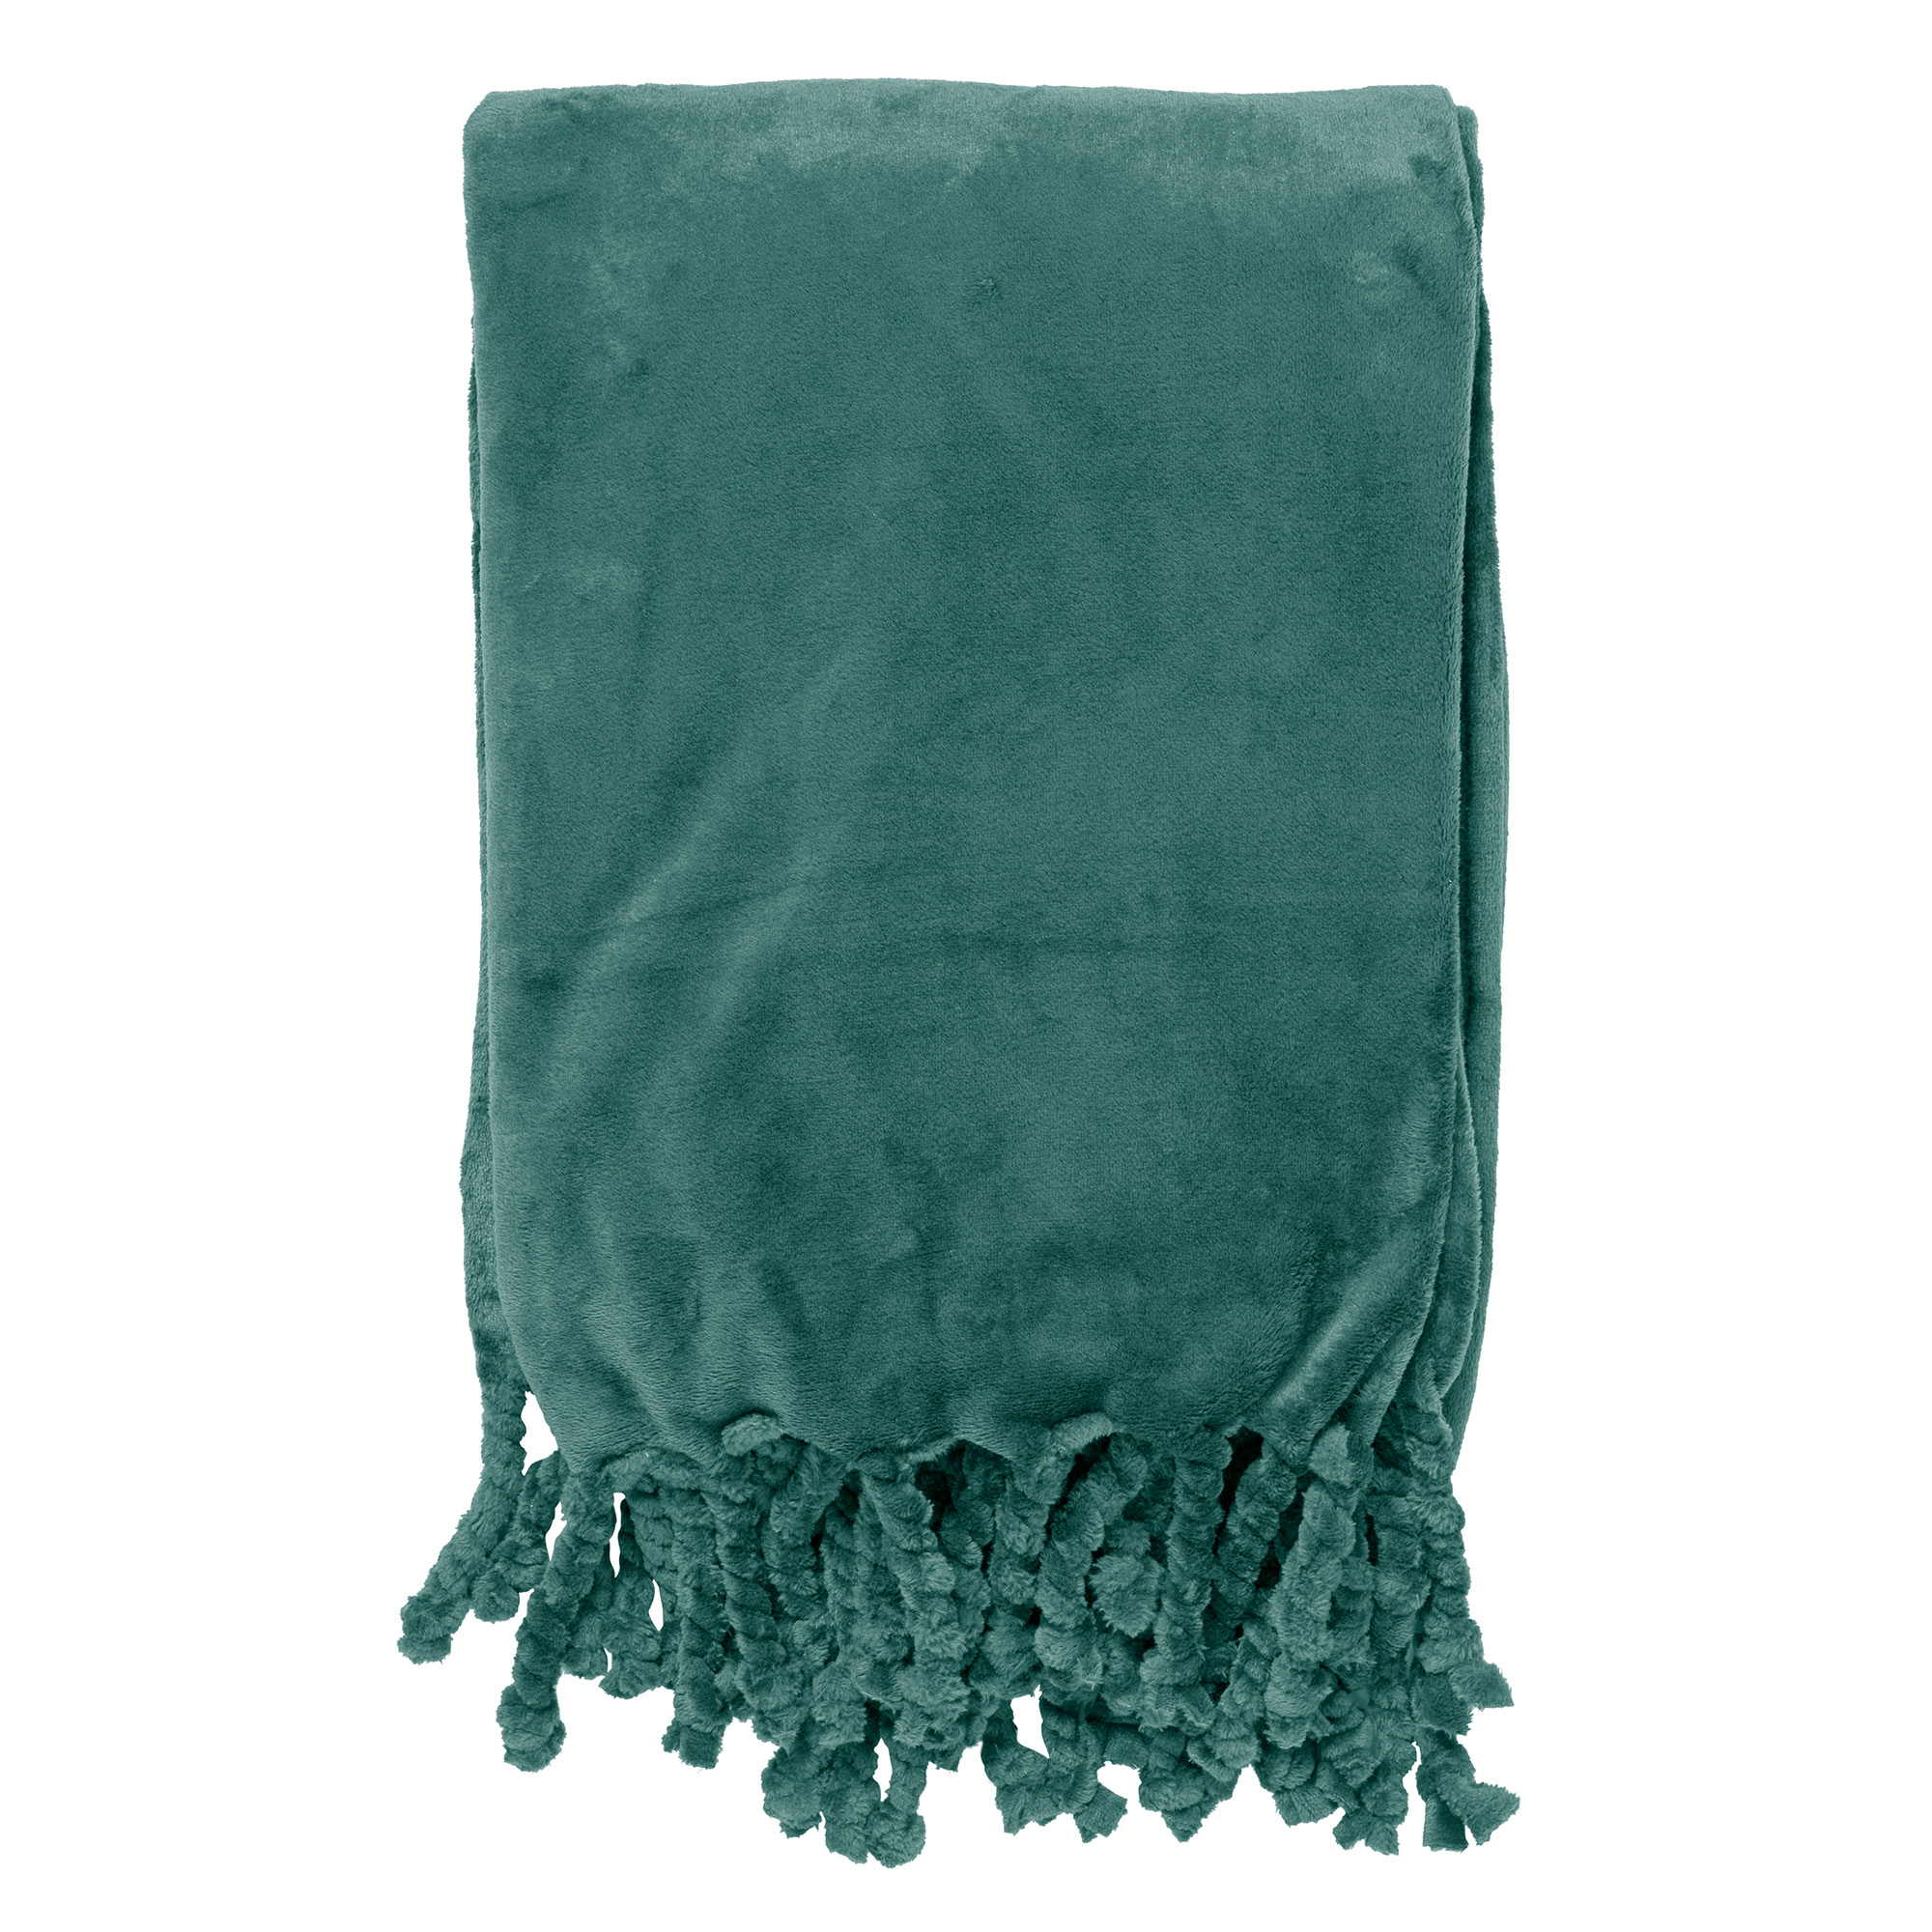 FLORIJN - Plaid 150x200 cm - grote fleece plaid met flosjes - Sagebrush Green - groen